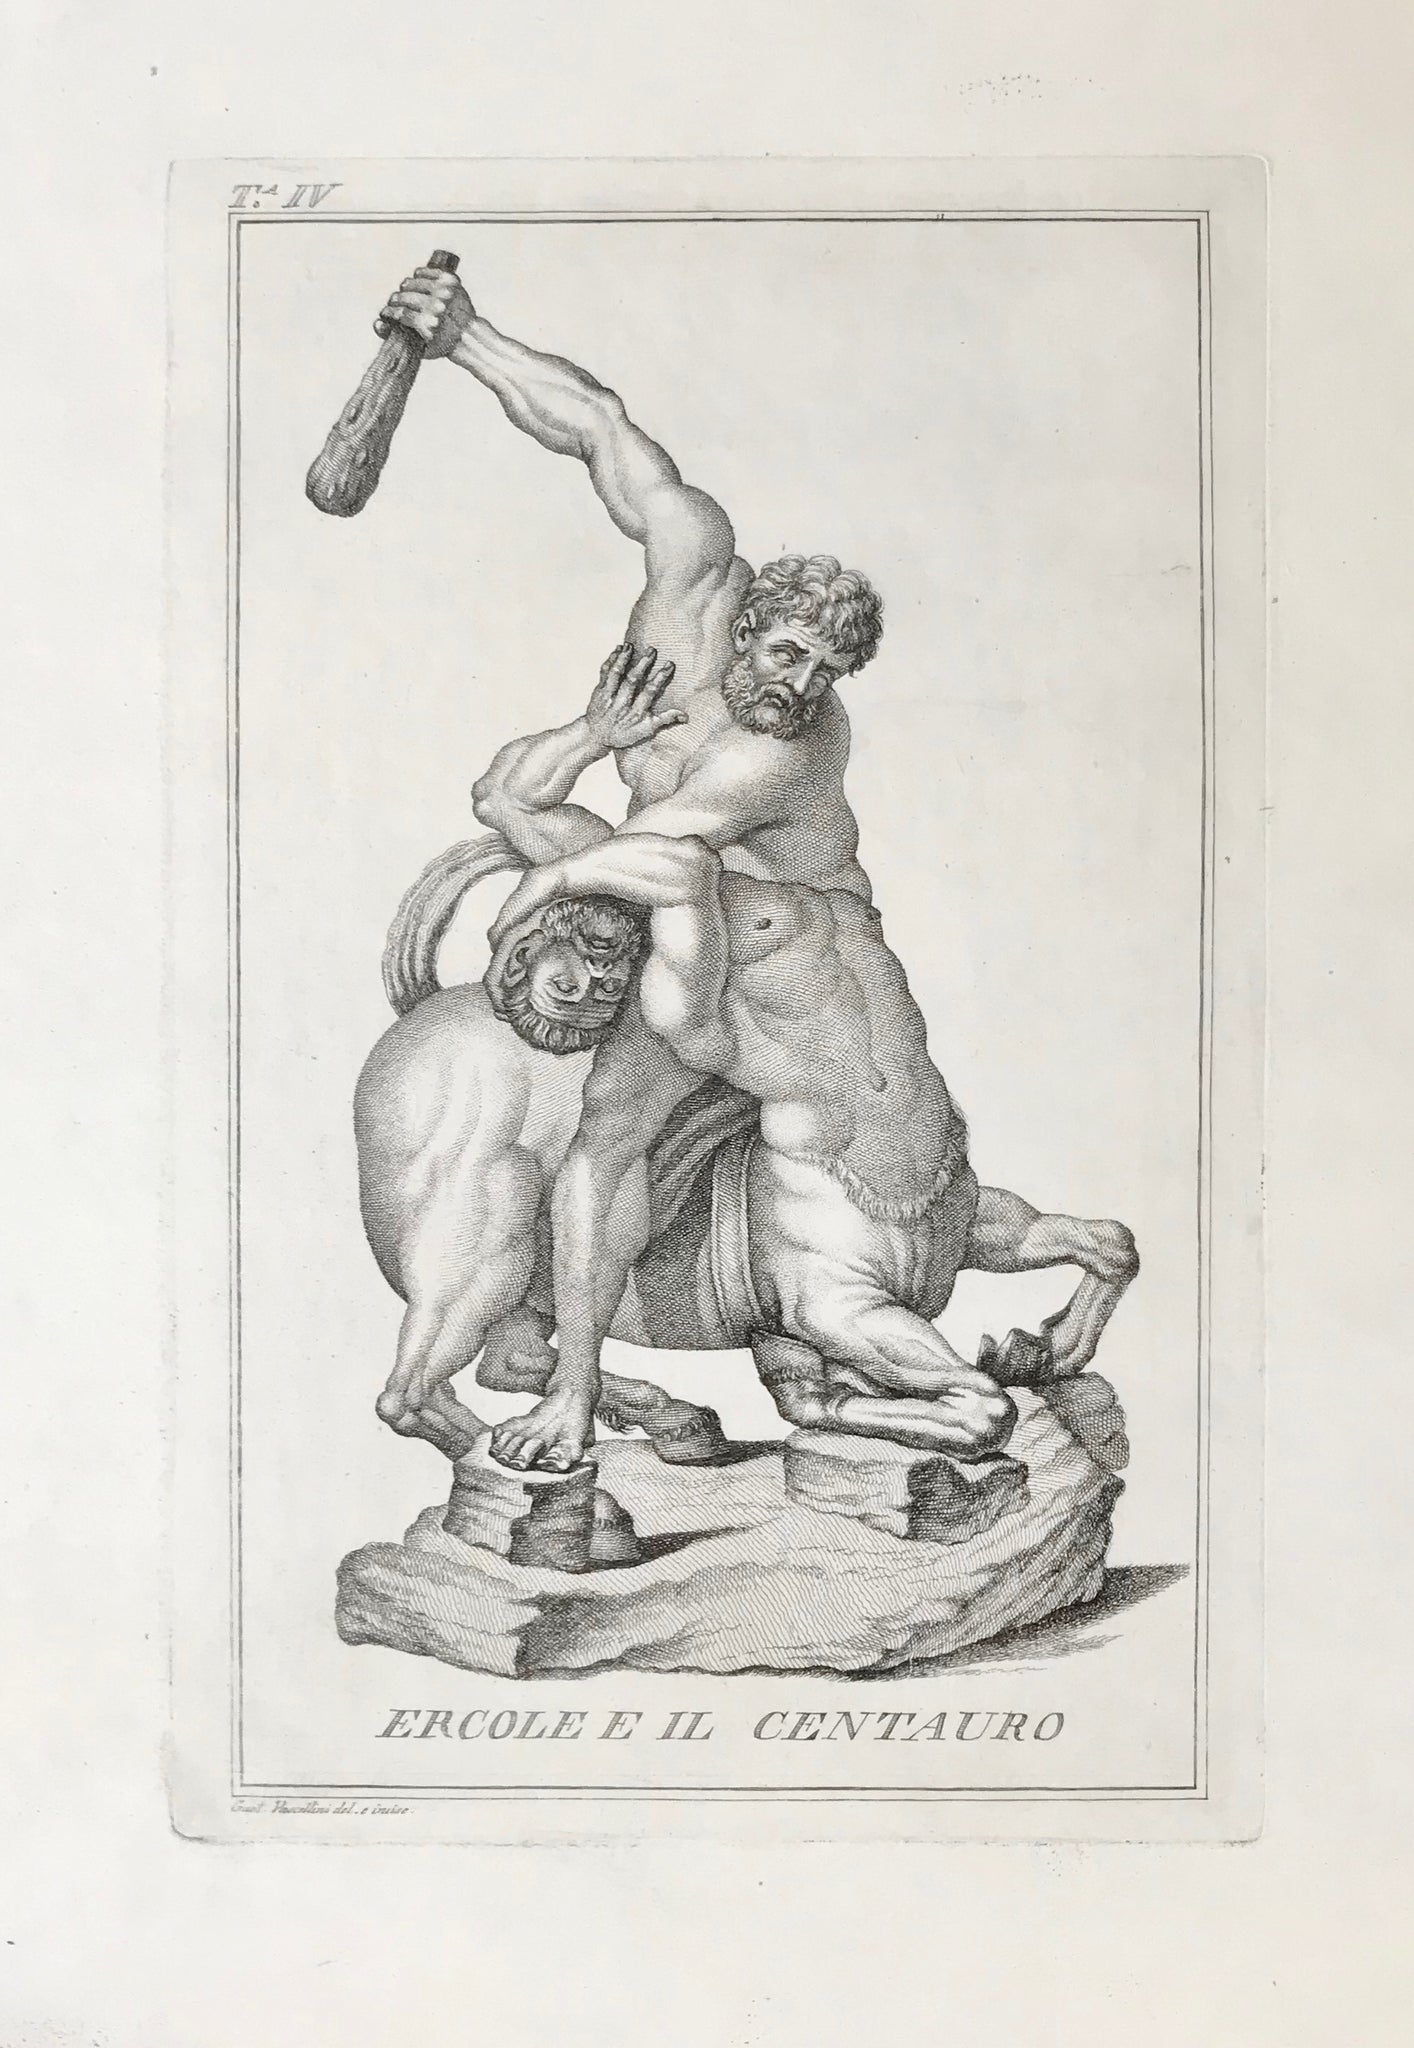 "Ercole E Il Centauro"  Copper etching by Gaetano Vascellini (1745-1805) after his own drawing.  From "Statue e gruppi nel Giardino di Boboli", 1779